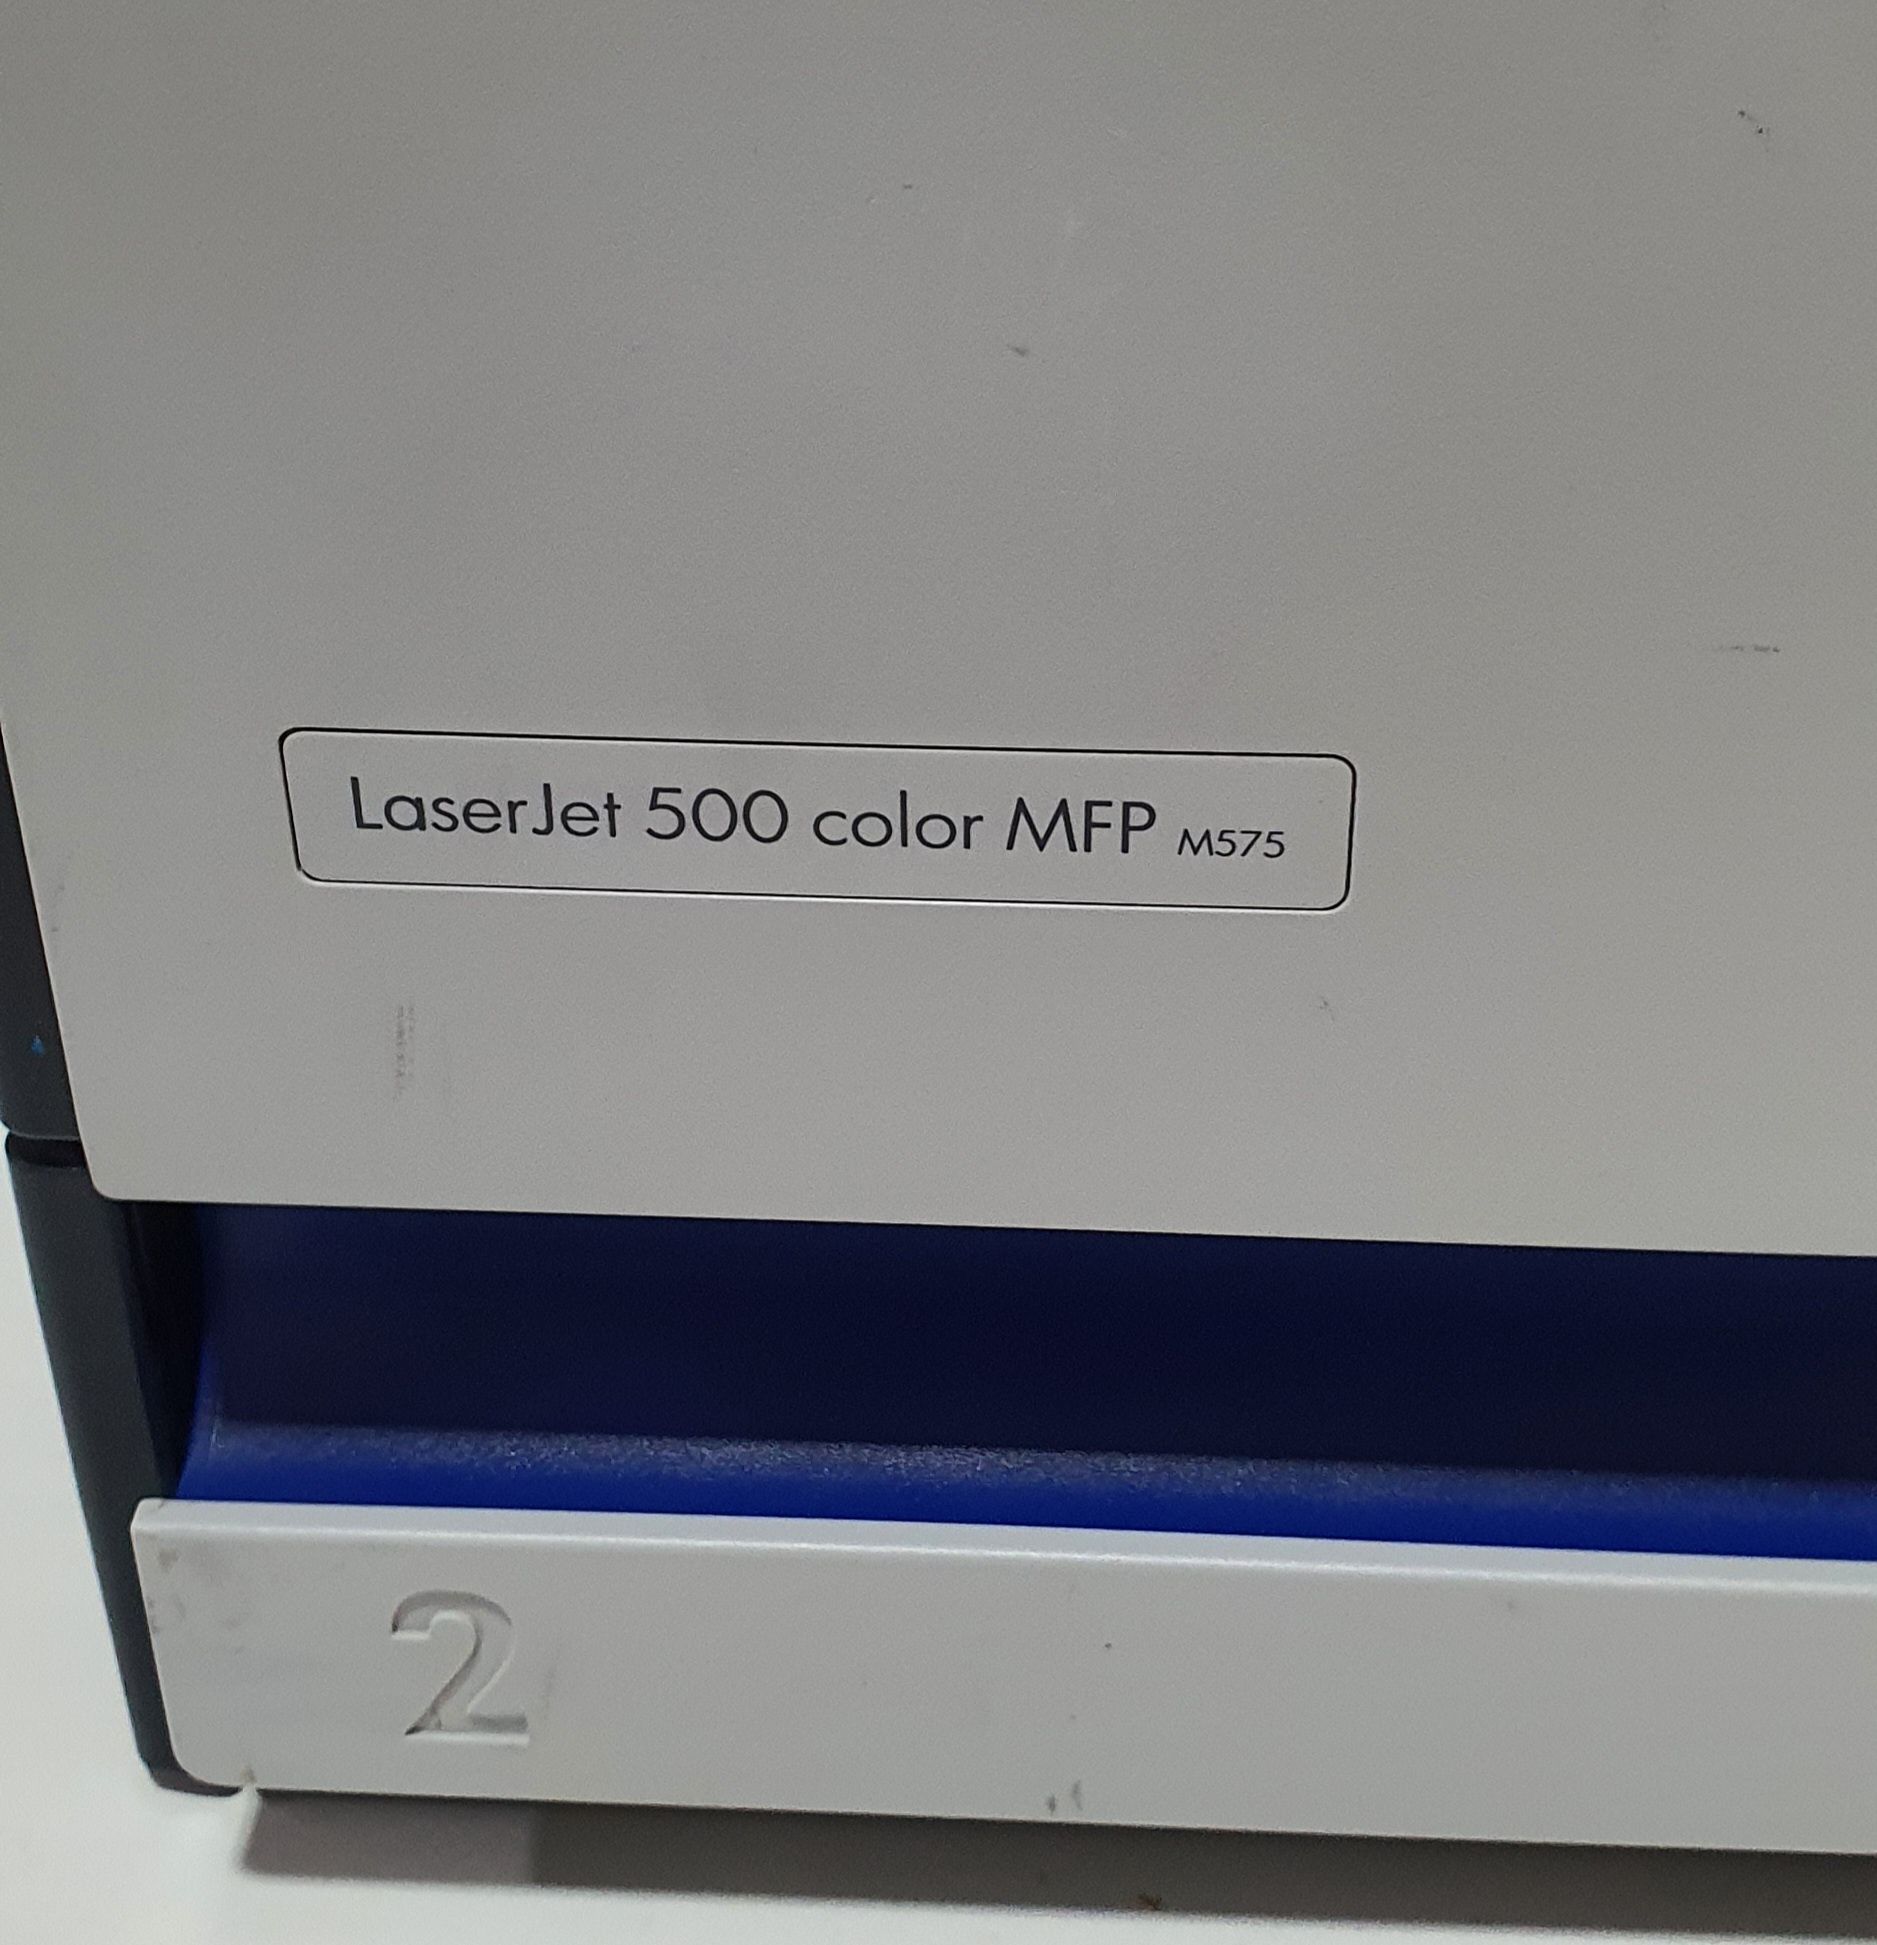 Imprimanta multifunctionala color HP MFP M575 (LASER JET 500)